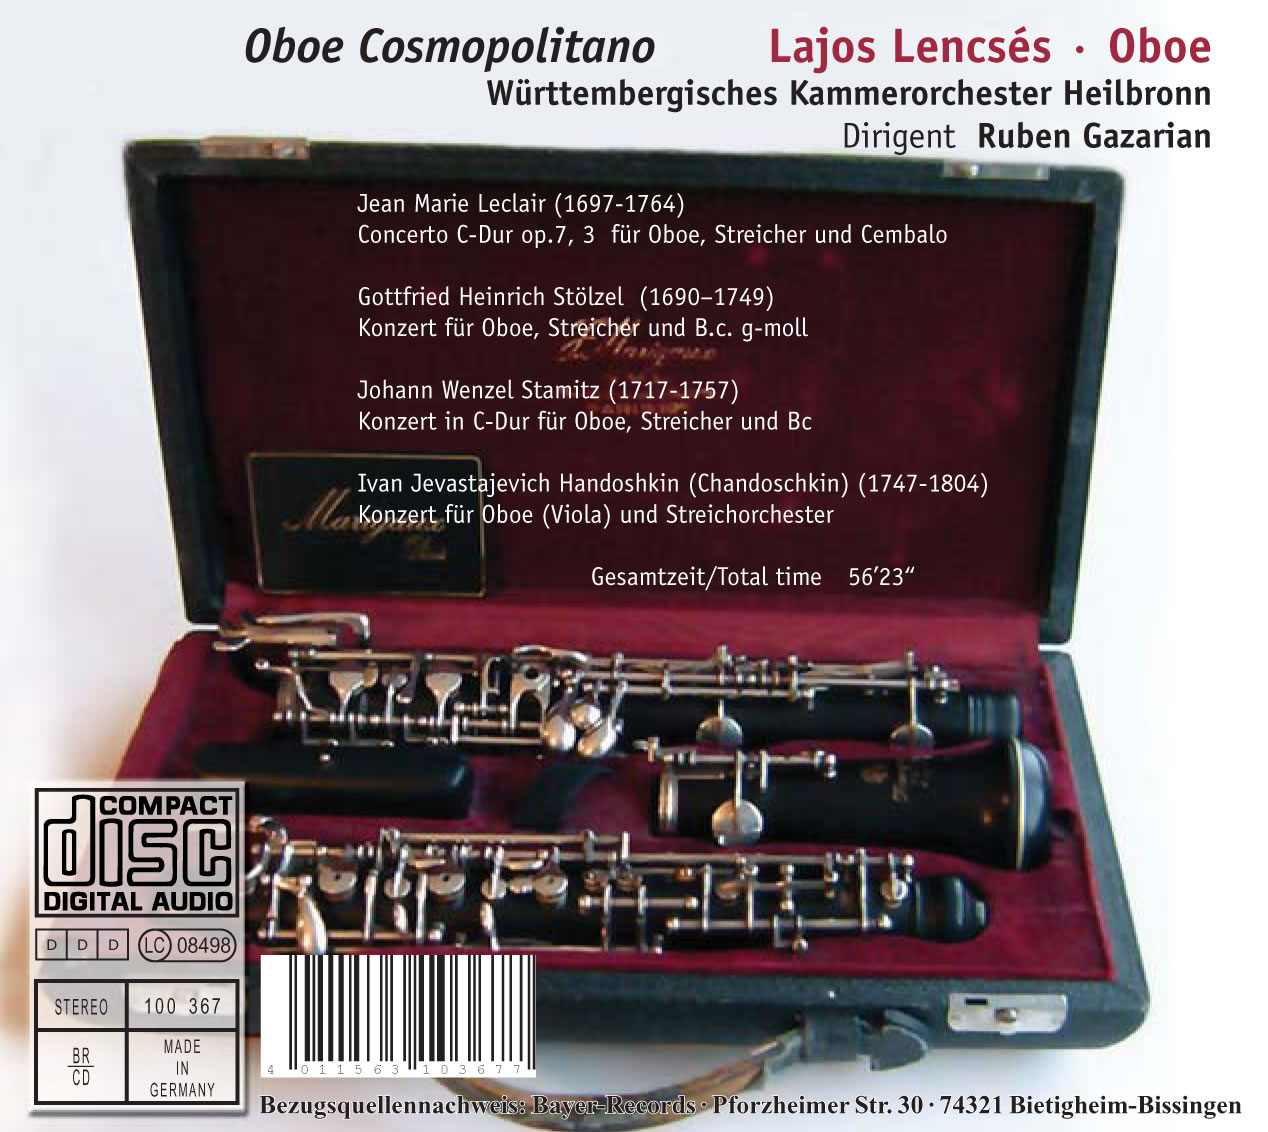 Oboe Cosmopolitano